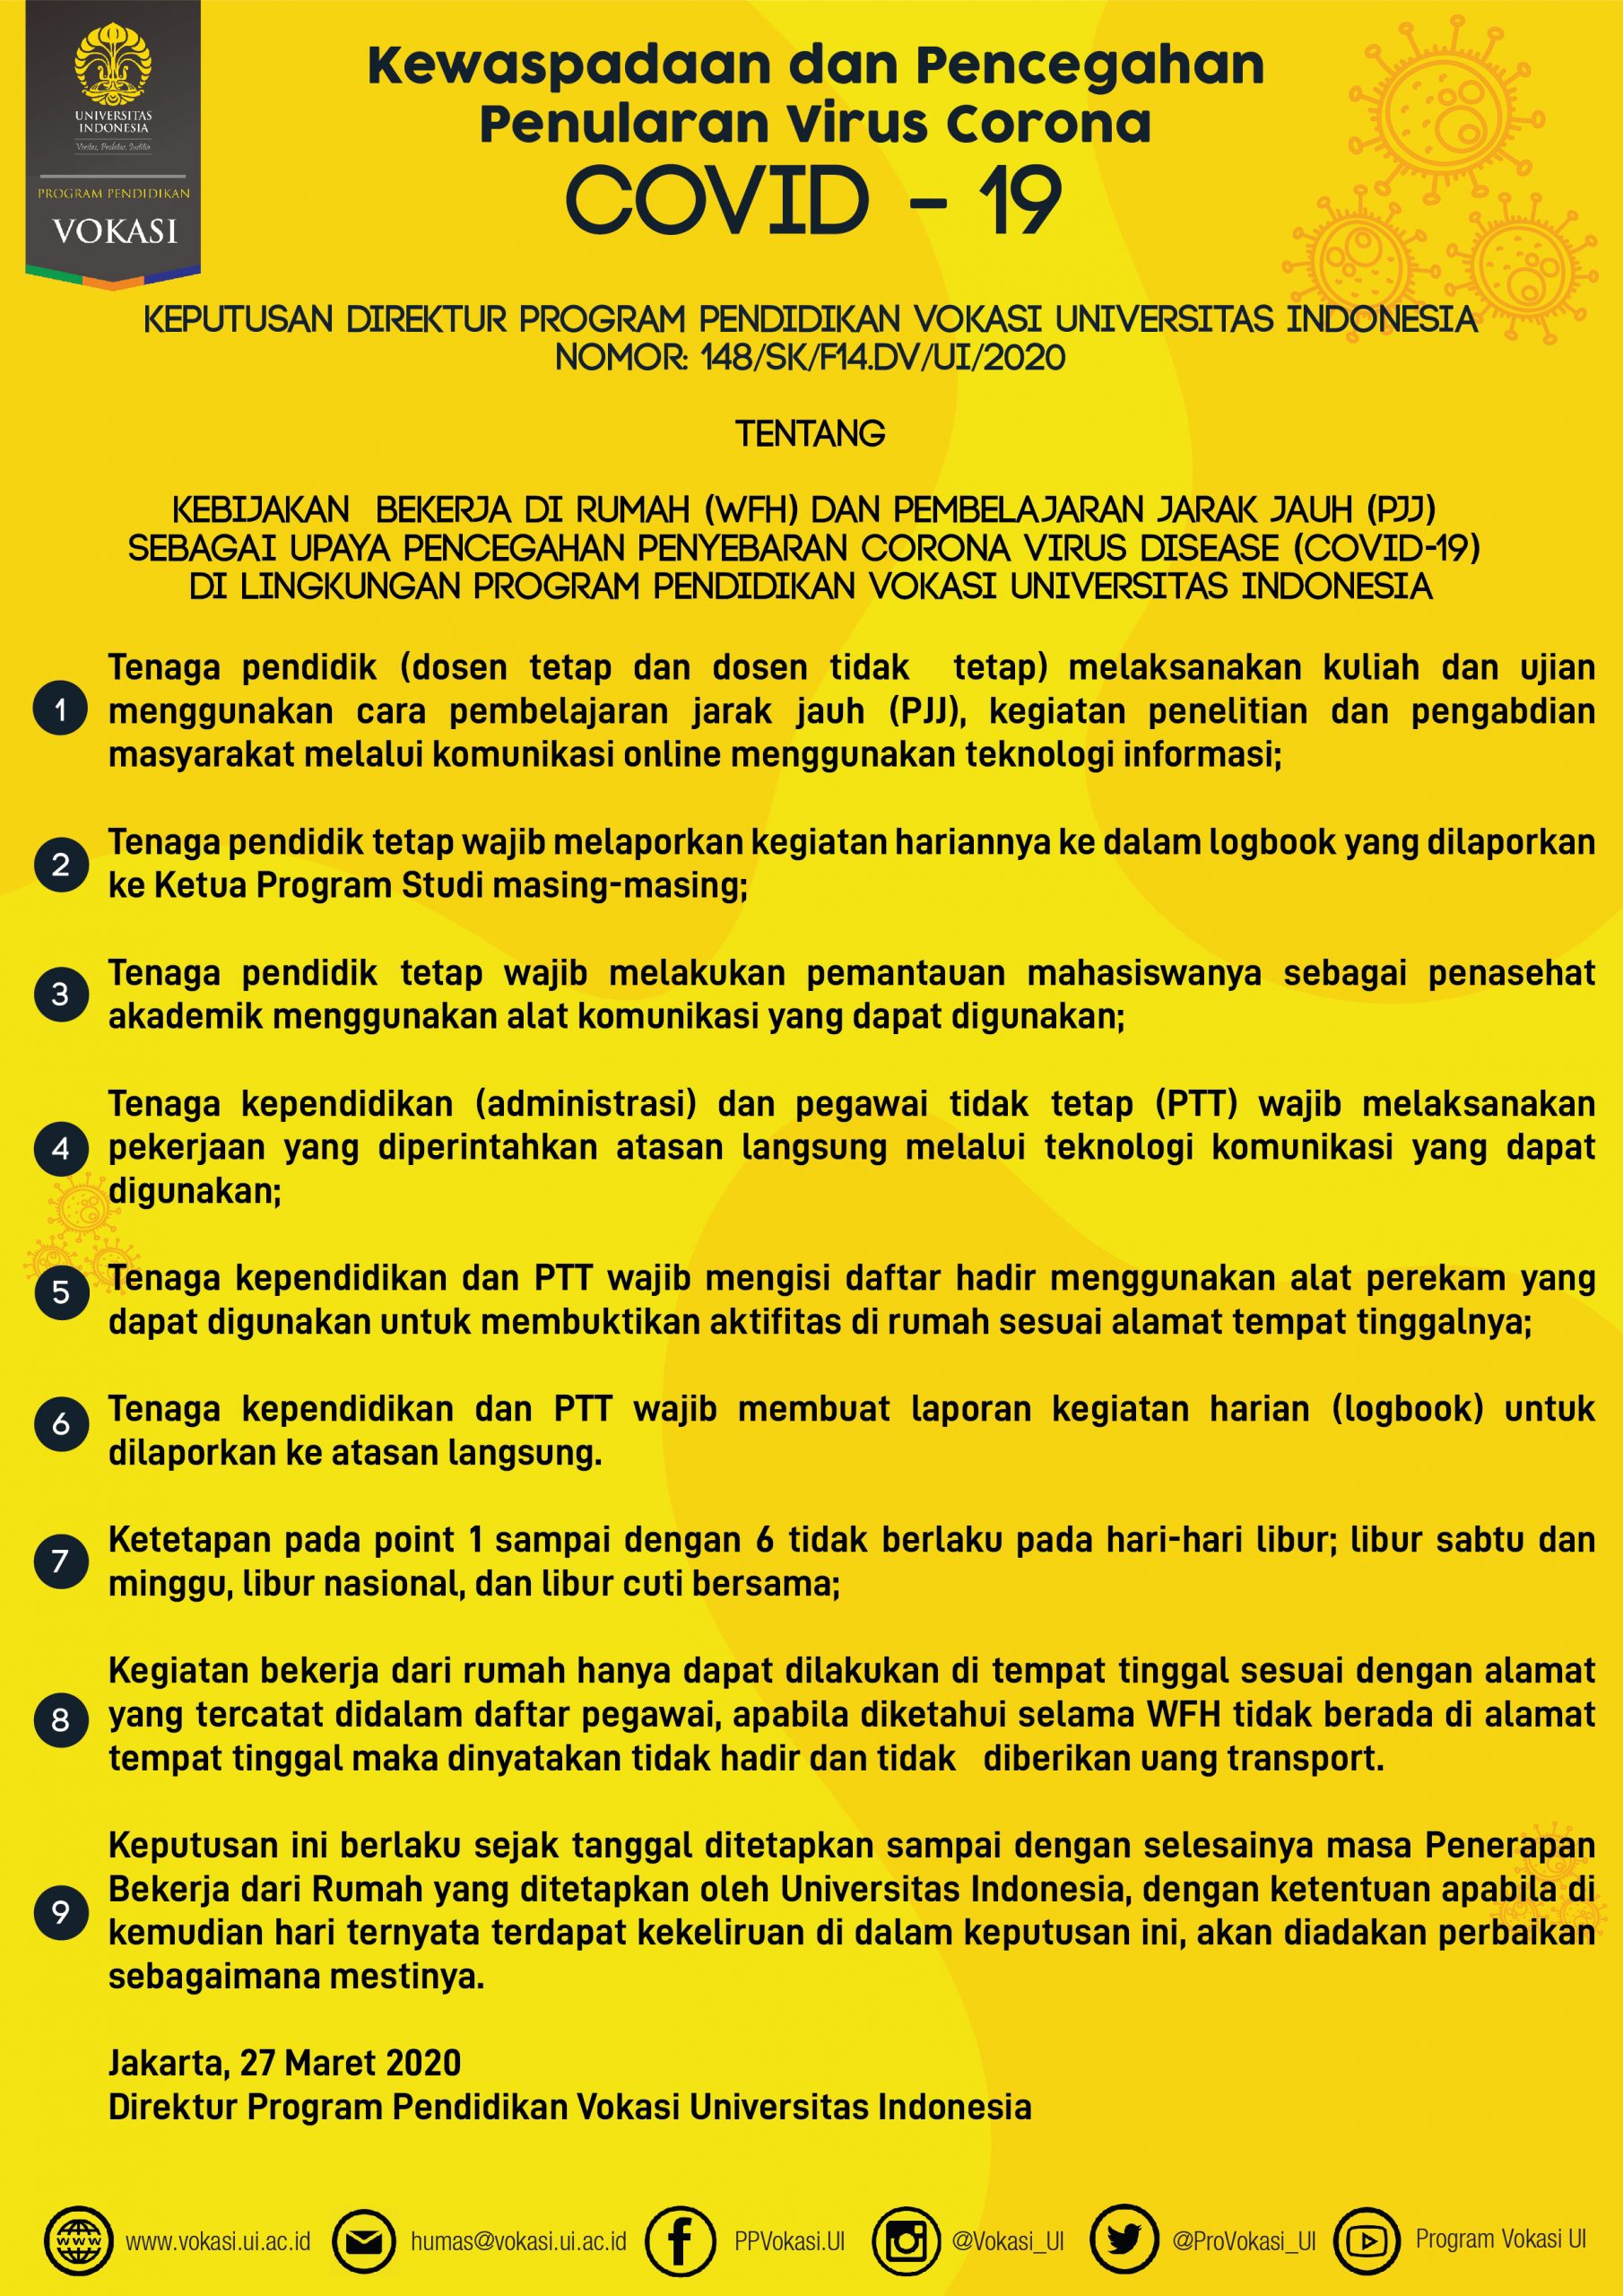 Surat Keputusan Direktur Tentang Kebijakan Wfh Dan Pjj Sebagai Upaya Pencegahan Penyebaran Covid 19 Program Pendidikan Vokasi Universitas Indonesia